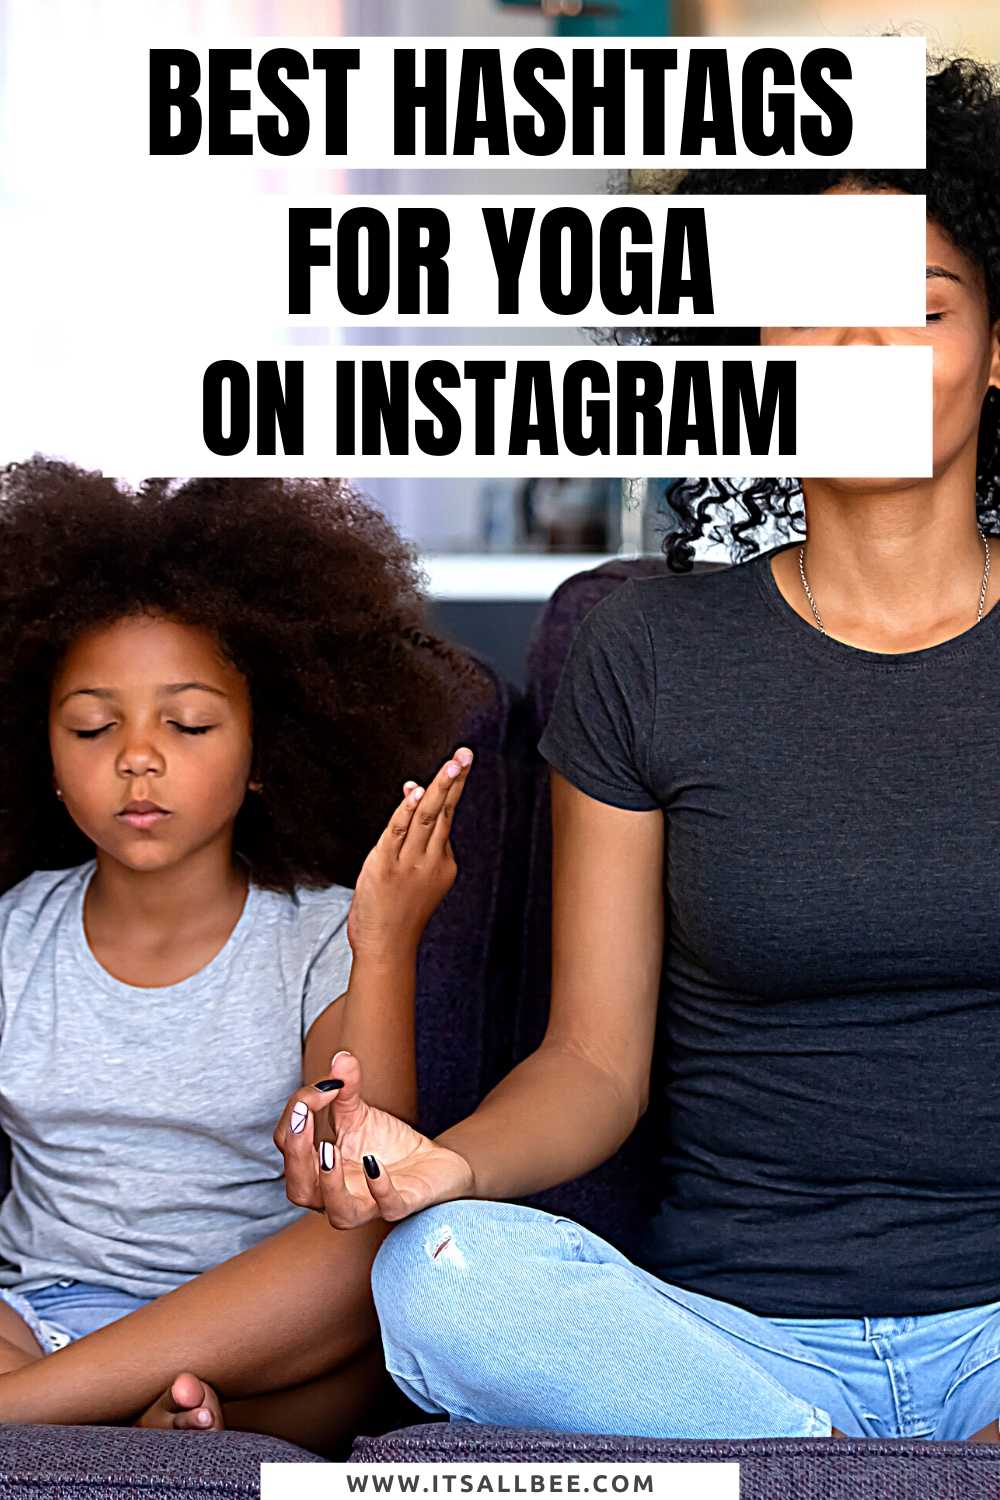 hashtag yoga